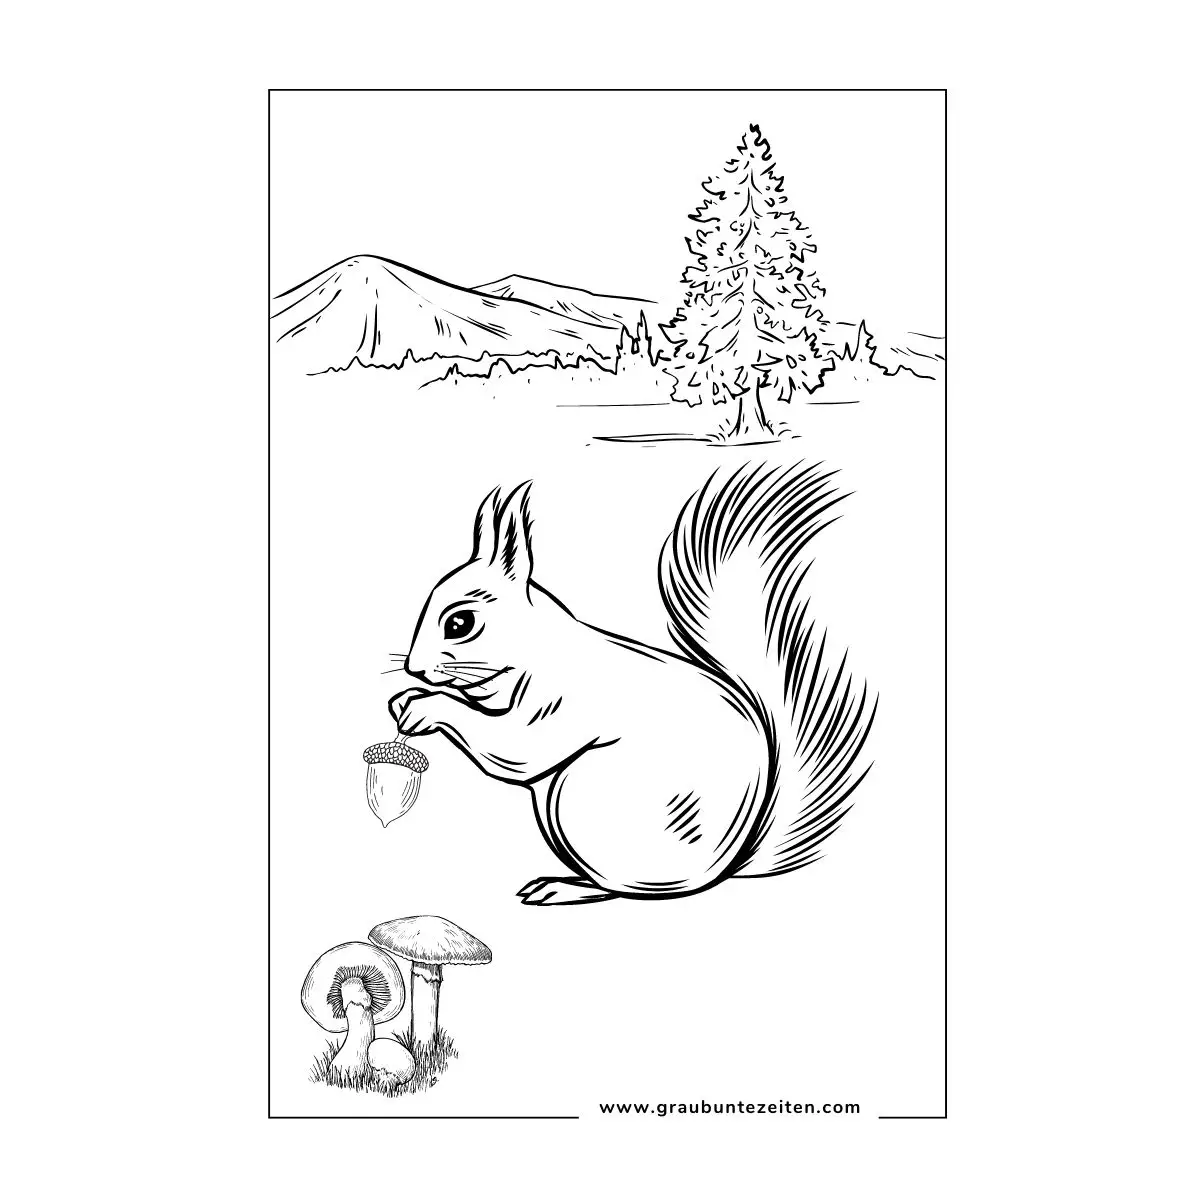 Ausmalbild Herbst mit einem Eichhörnchen, dass eine Eichel in den Pfoten hält.